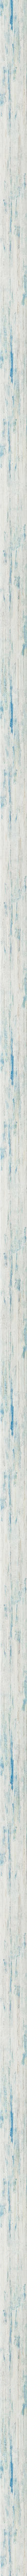 Μπλε ντεκαπέ κορνίζα με βάθος frame